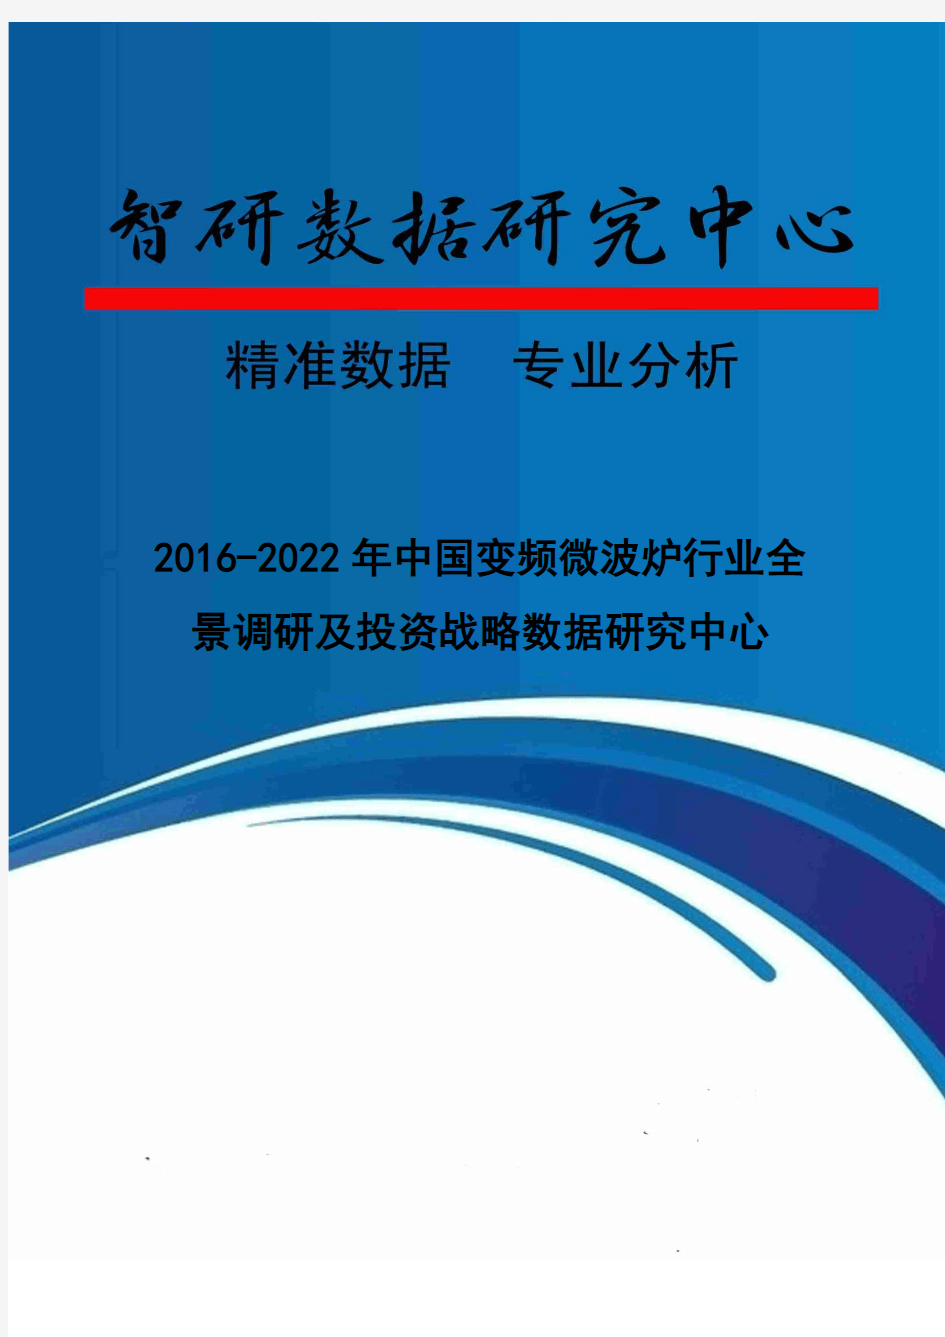 2016-2022年中国变频微波炉行业全景调研及投资战略数据研究中心